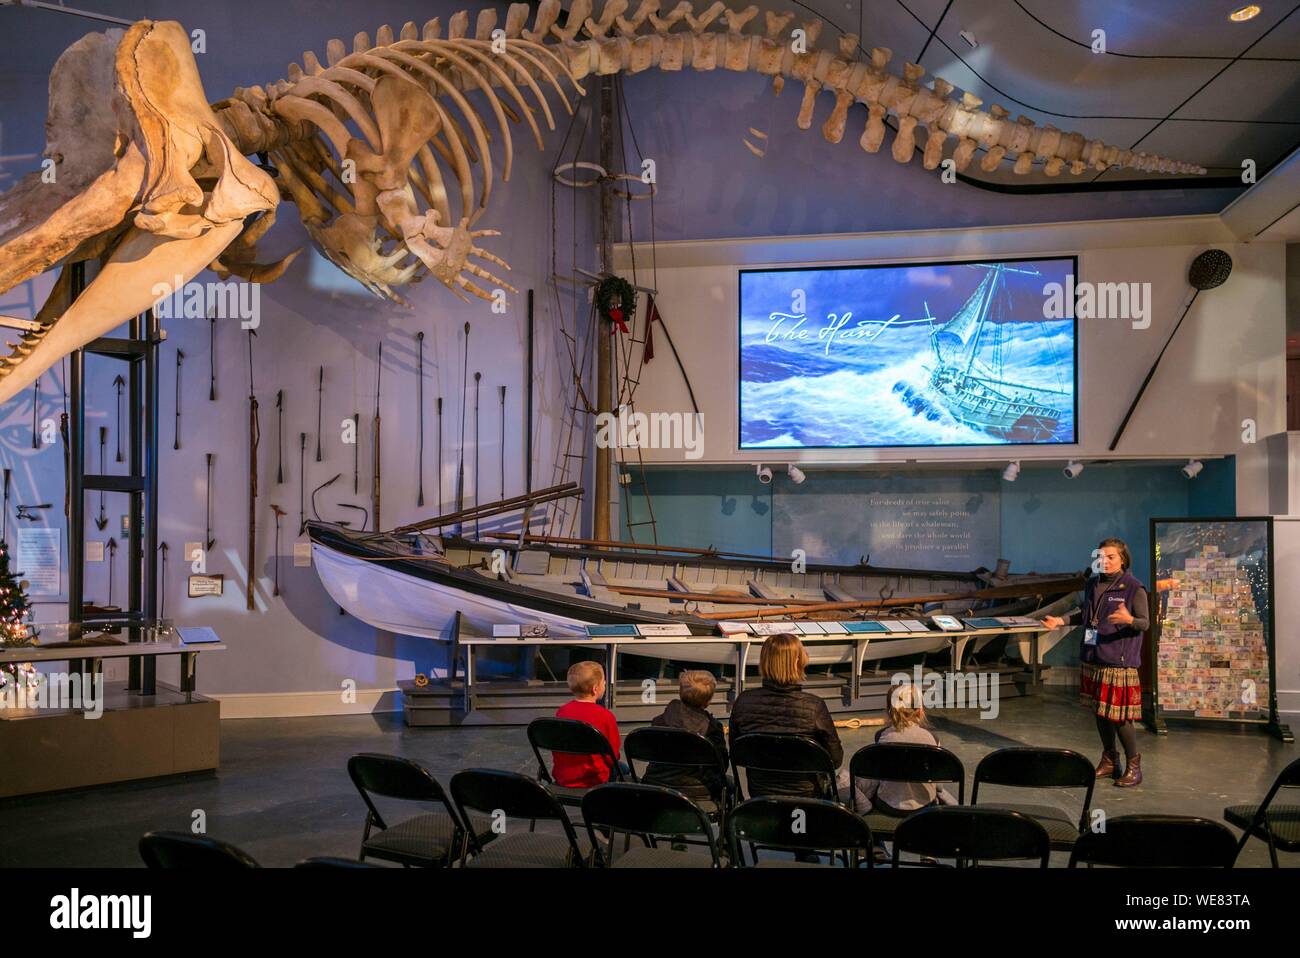 United States, New England, Massachusetts, Nantucket Island, Nantucket, Nantucket Whaling Museum, whale skeleton and whaling presentation Stock Photo